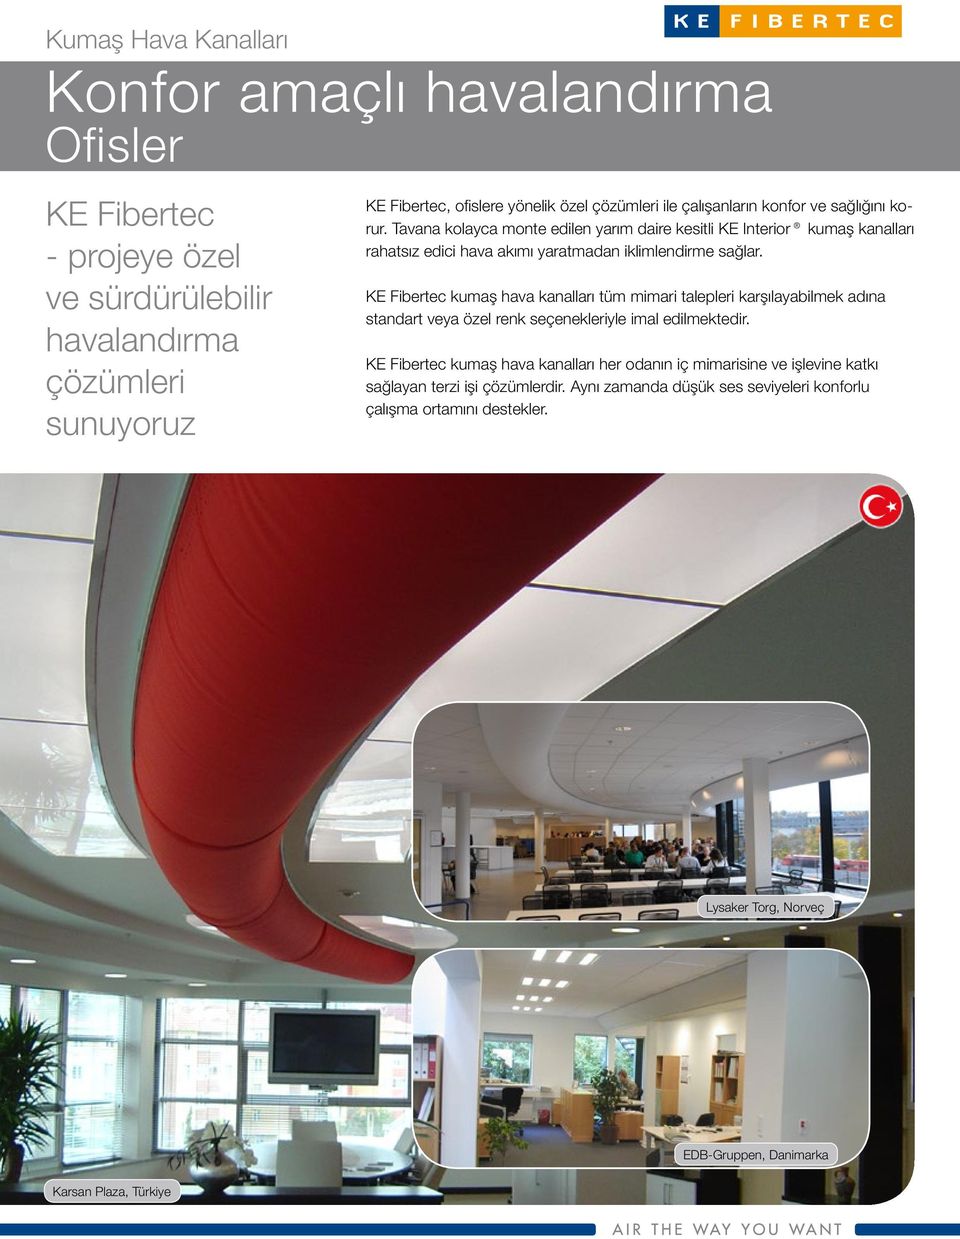 KE Fibertec kumaş hava kanalları tüm mimari talepleri karşılayabilmek adına standart veya özel renk seçenekleriyle imal edilmektedir.